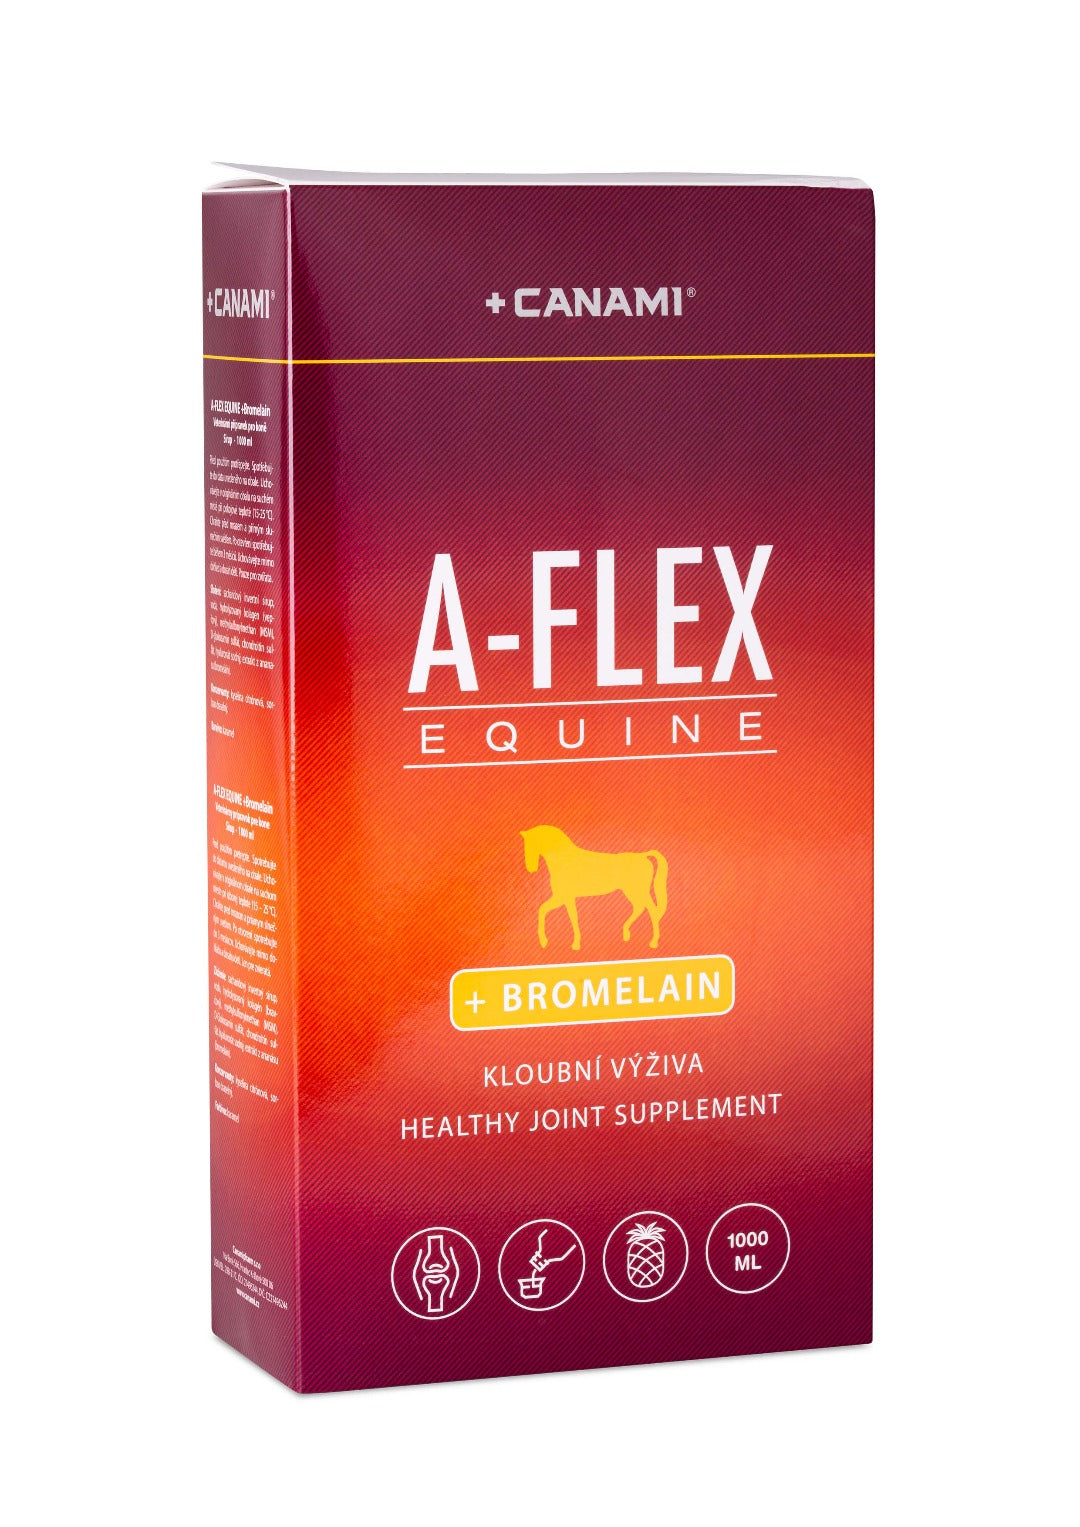 A-FLEX EQUINE + BROMELAIN 1000ML